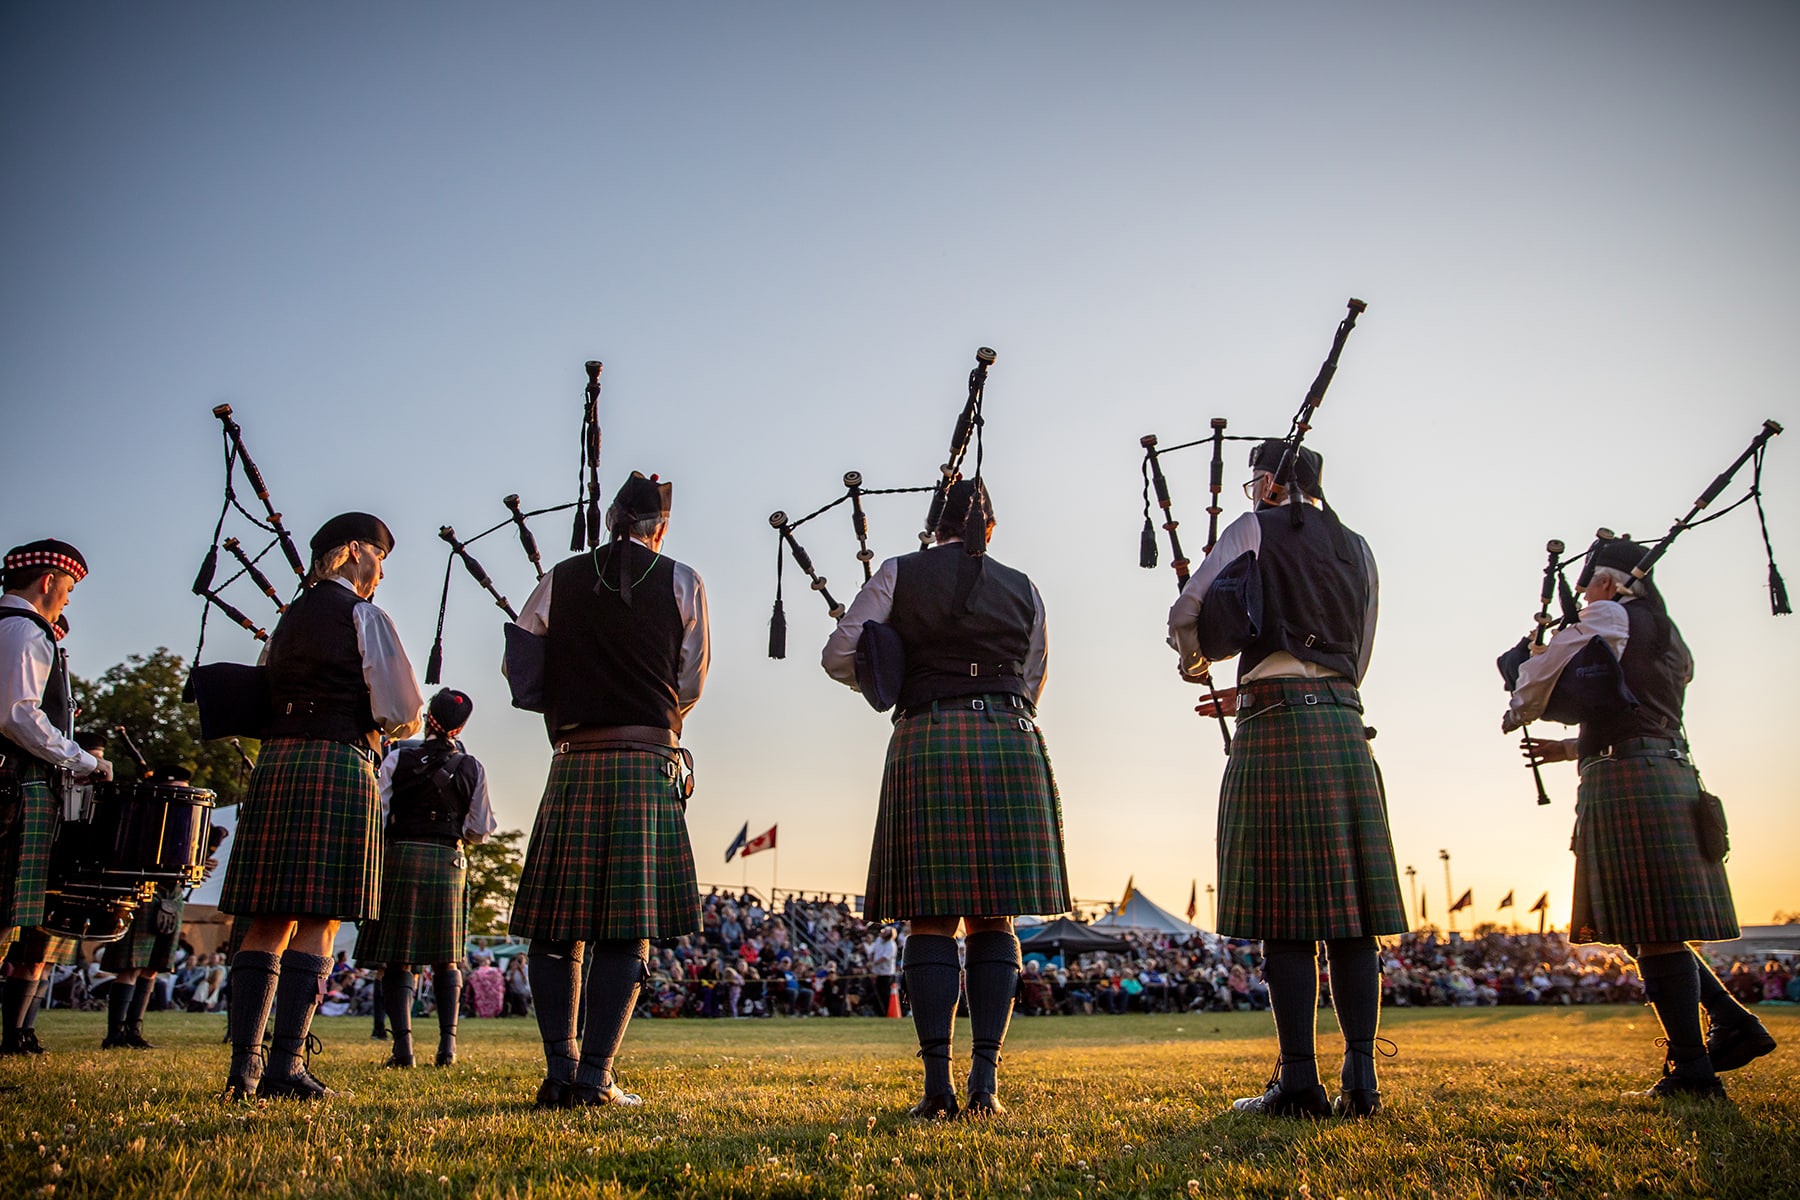 La banda de gaitas escocesa Johnstone Pipe Band, fundada en 1943, y ganadora de multitud de concursos a nivel nacional e internacional, llegará al escenario de Ortigueira el viernes 15 de julio